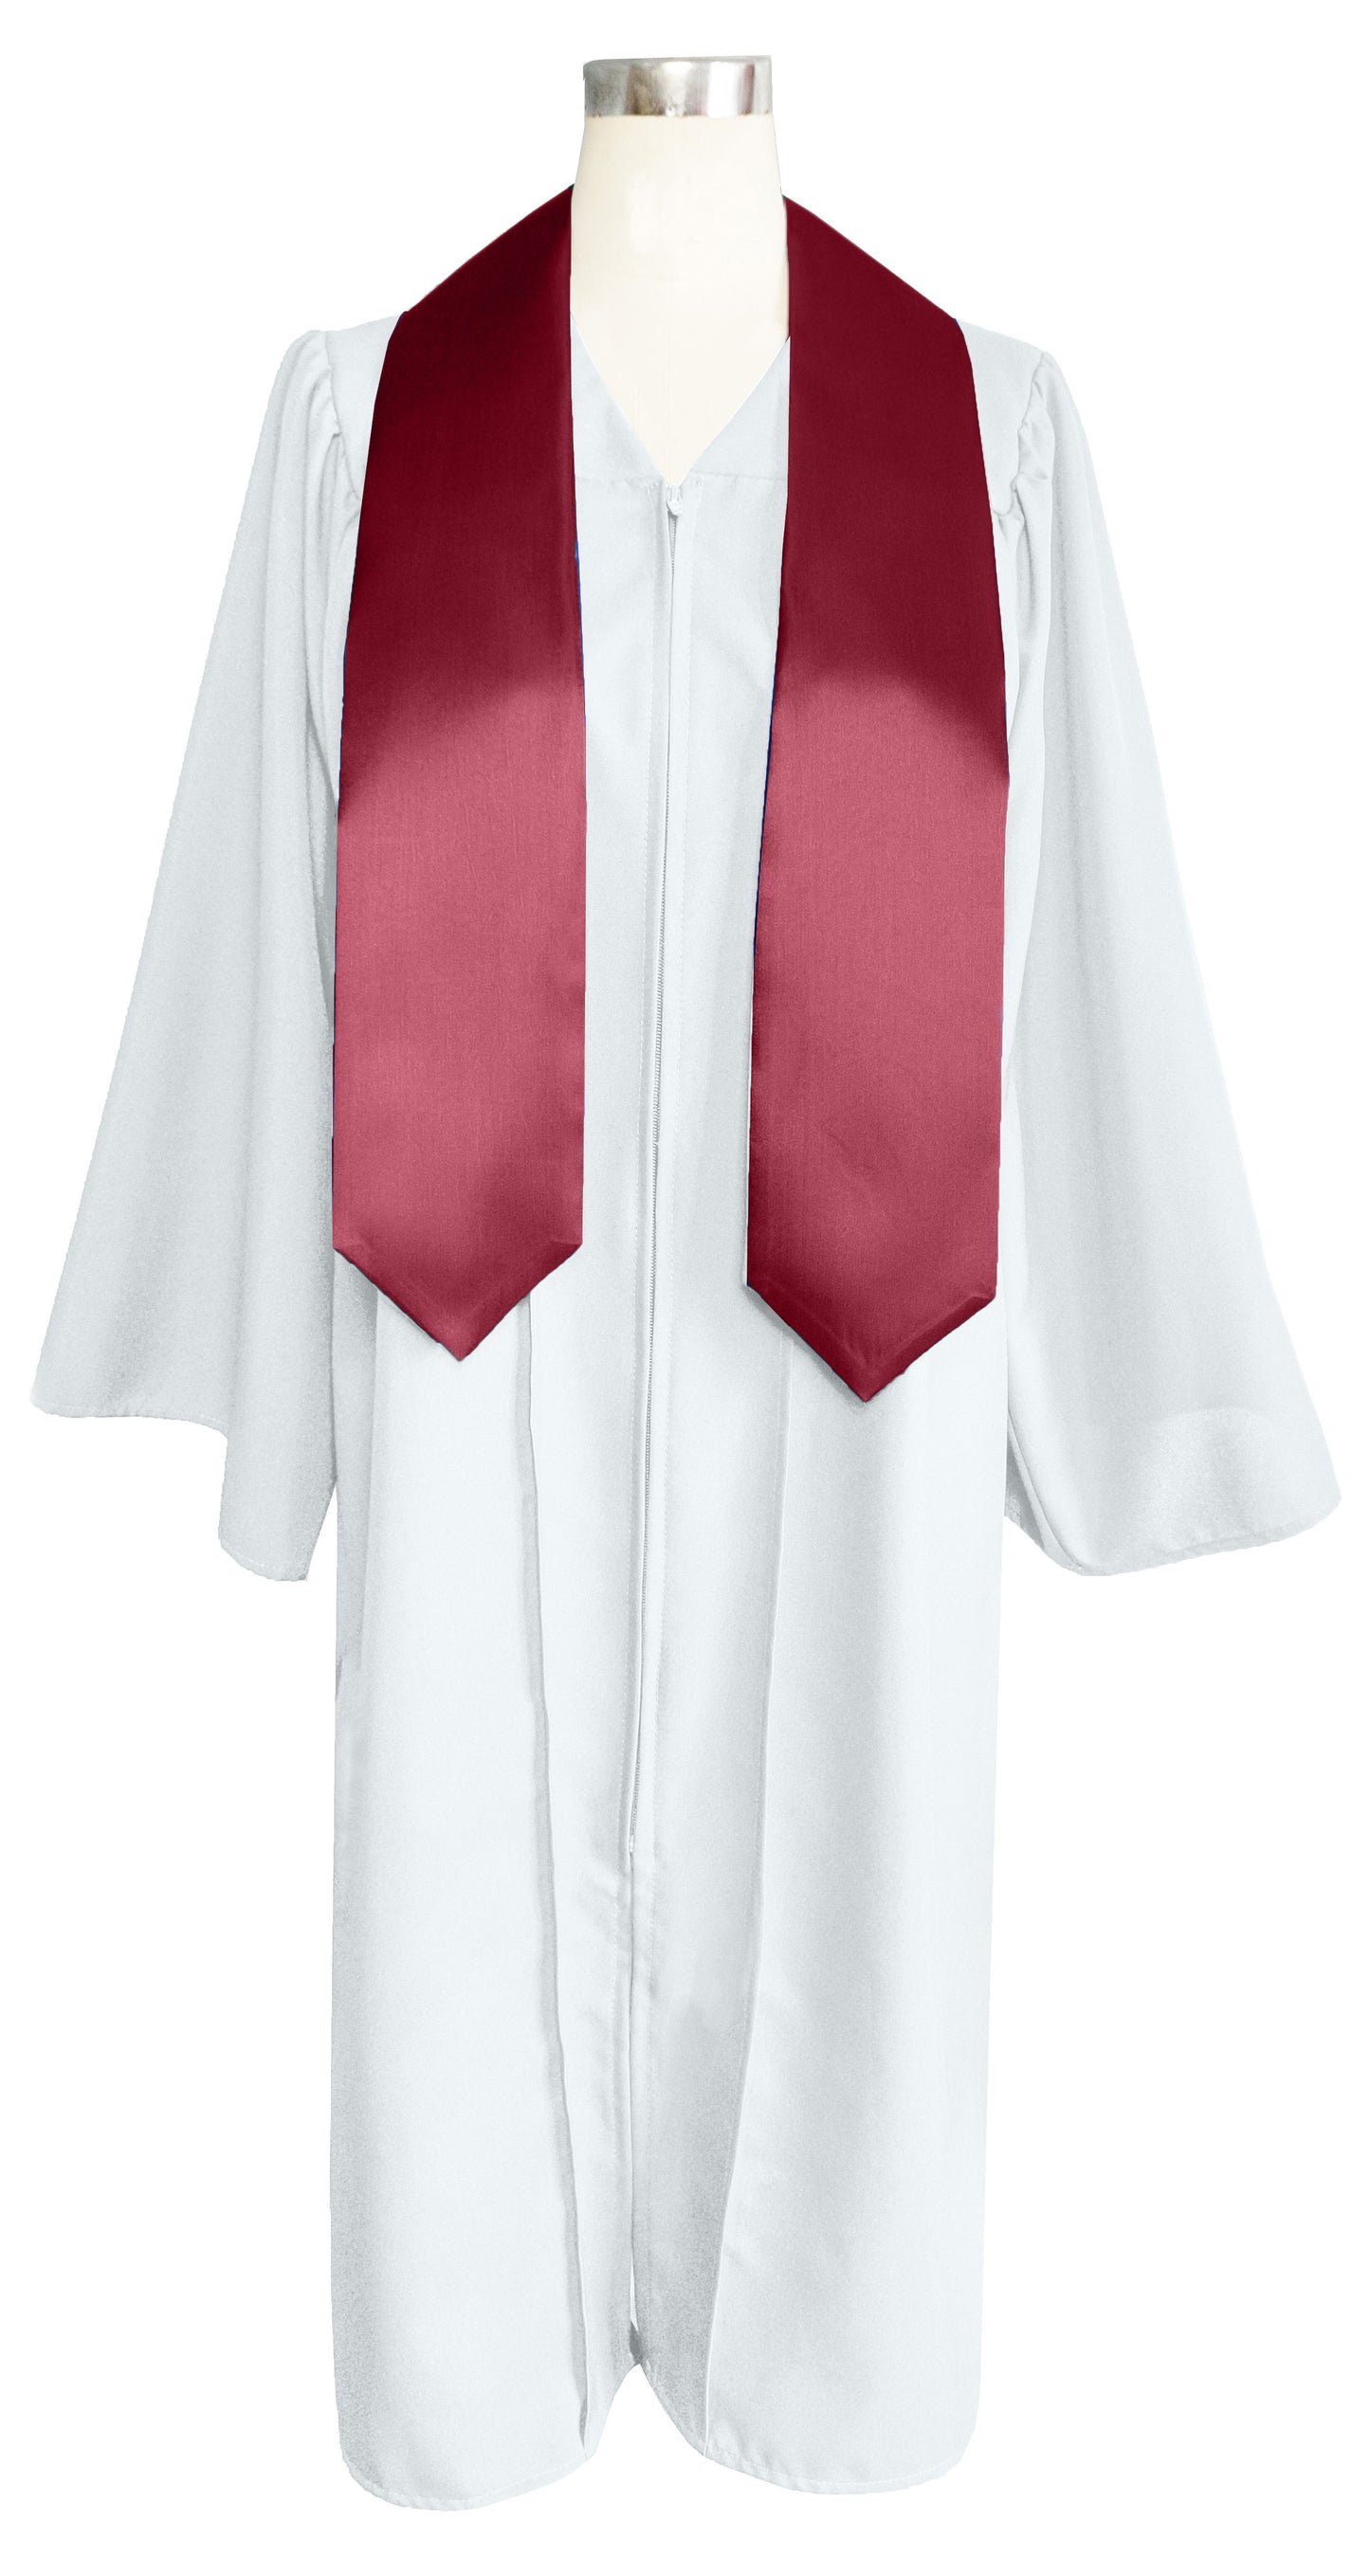 Adult Plain Graduation Stole 60” Unisex in Various Colors-CA graduation